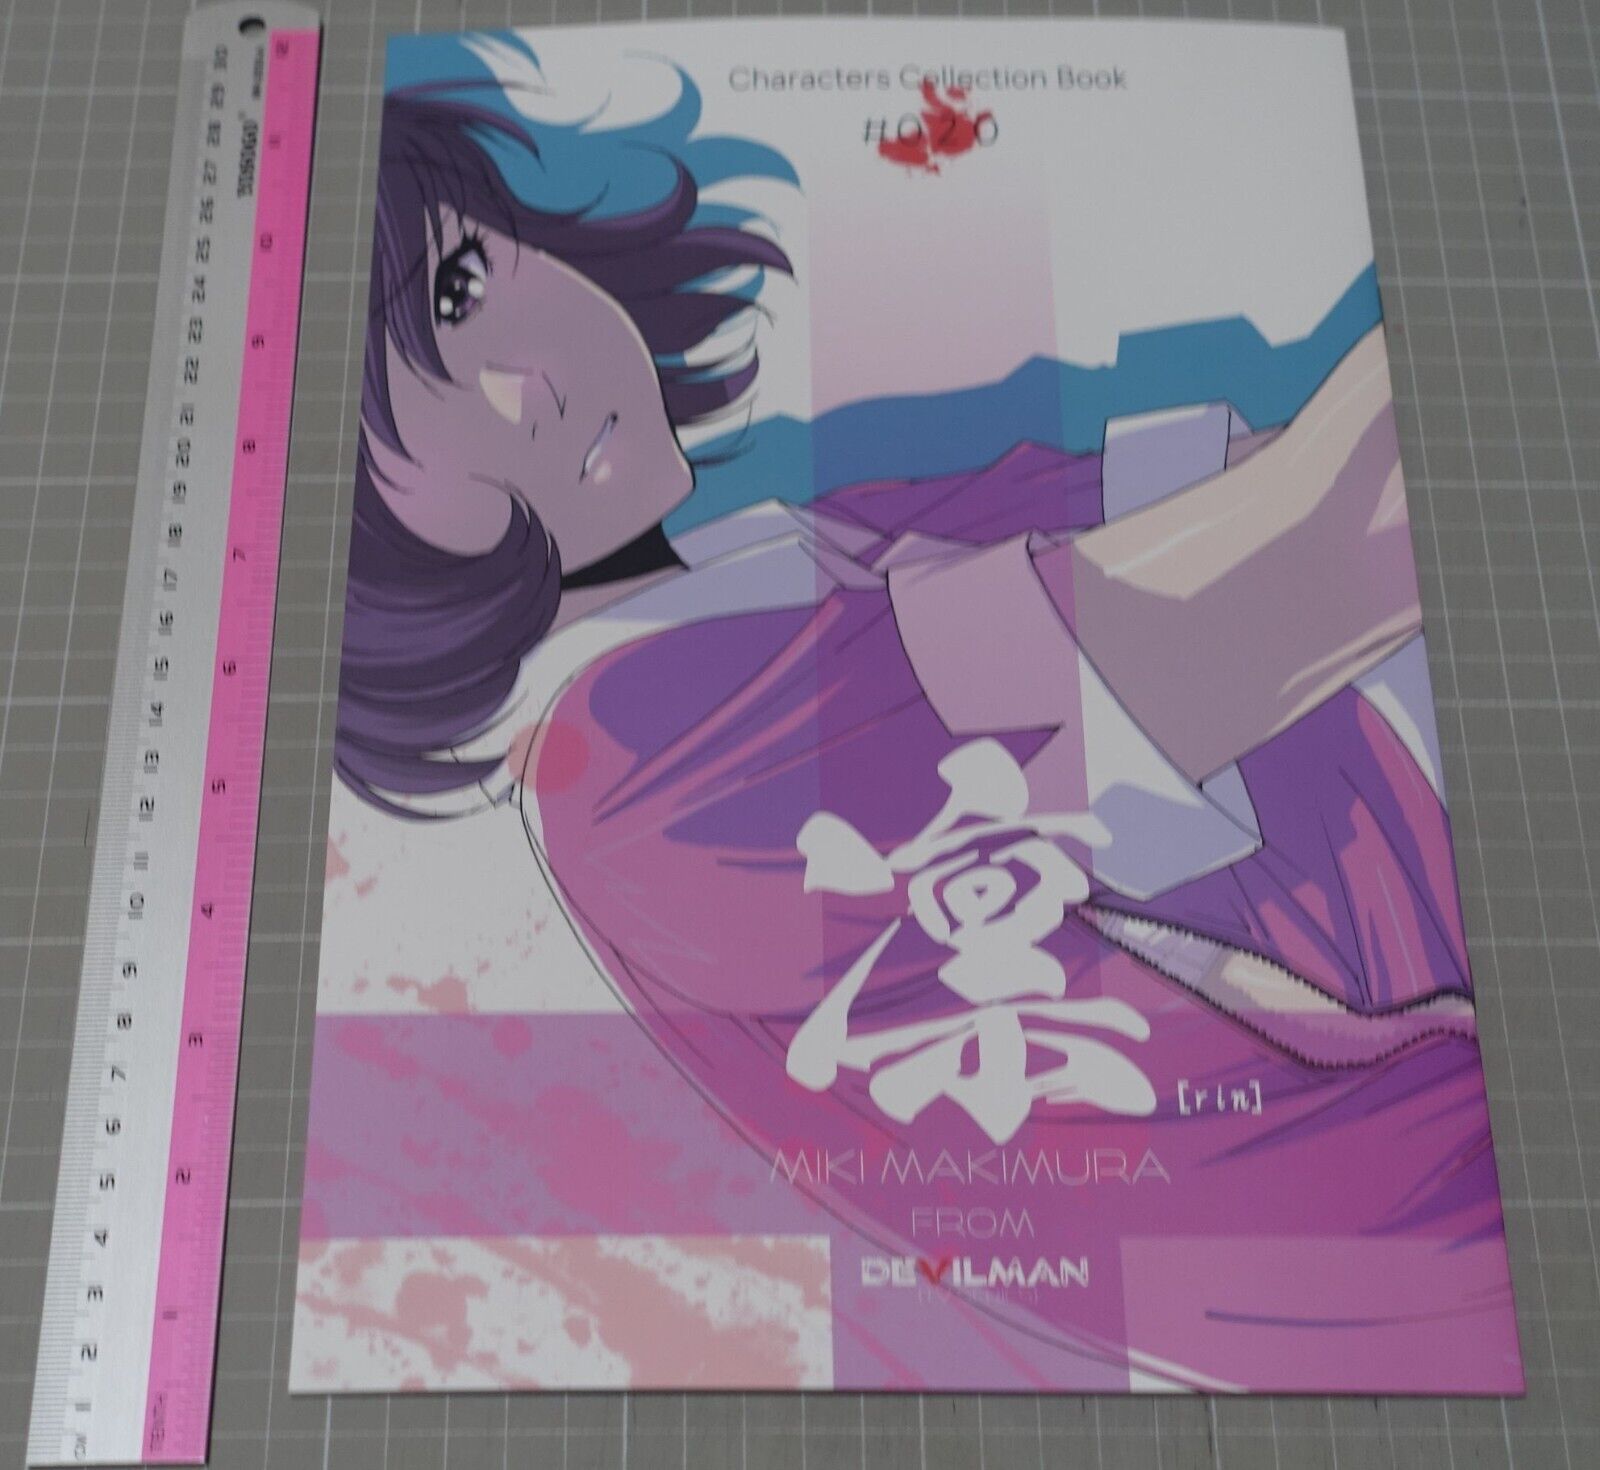 Kia Asamiya LAB-GARNIER Devil Man Miki Makimura Fan Art Book Rin C102 